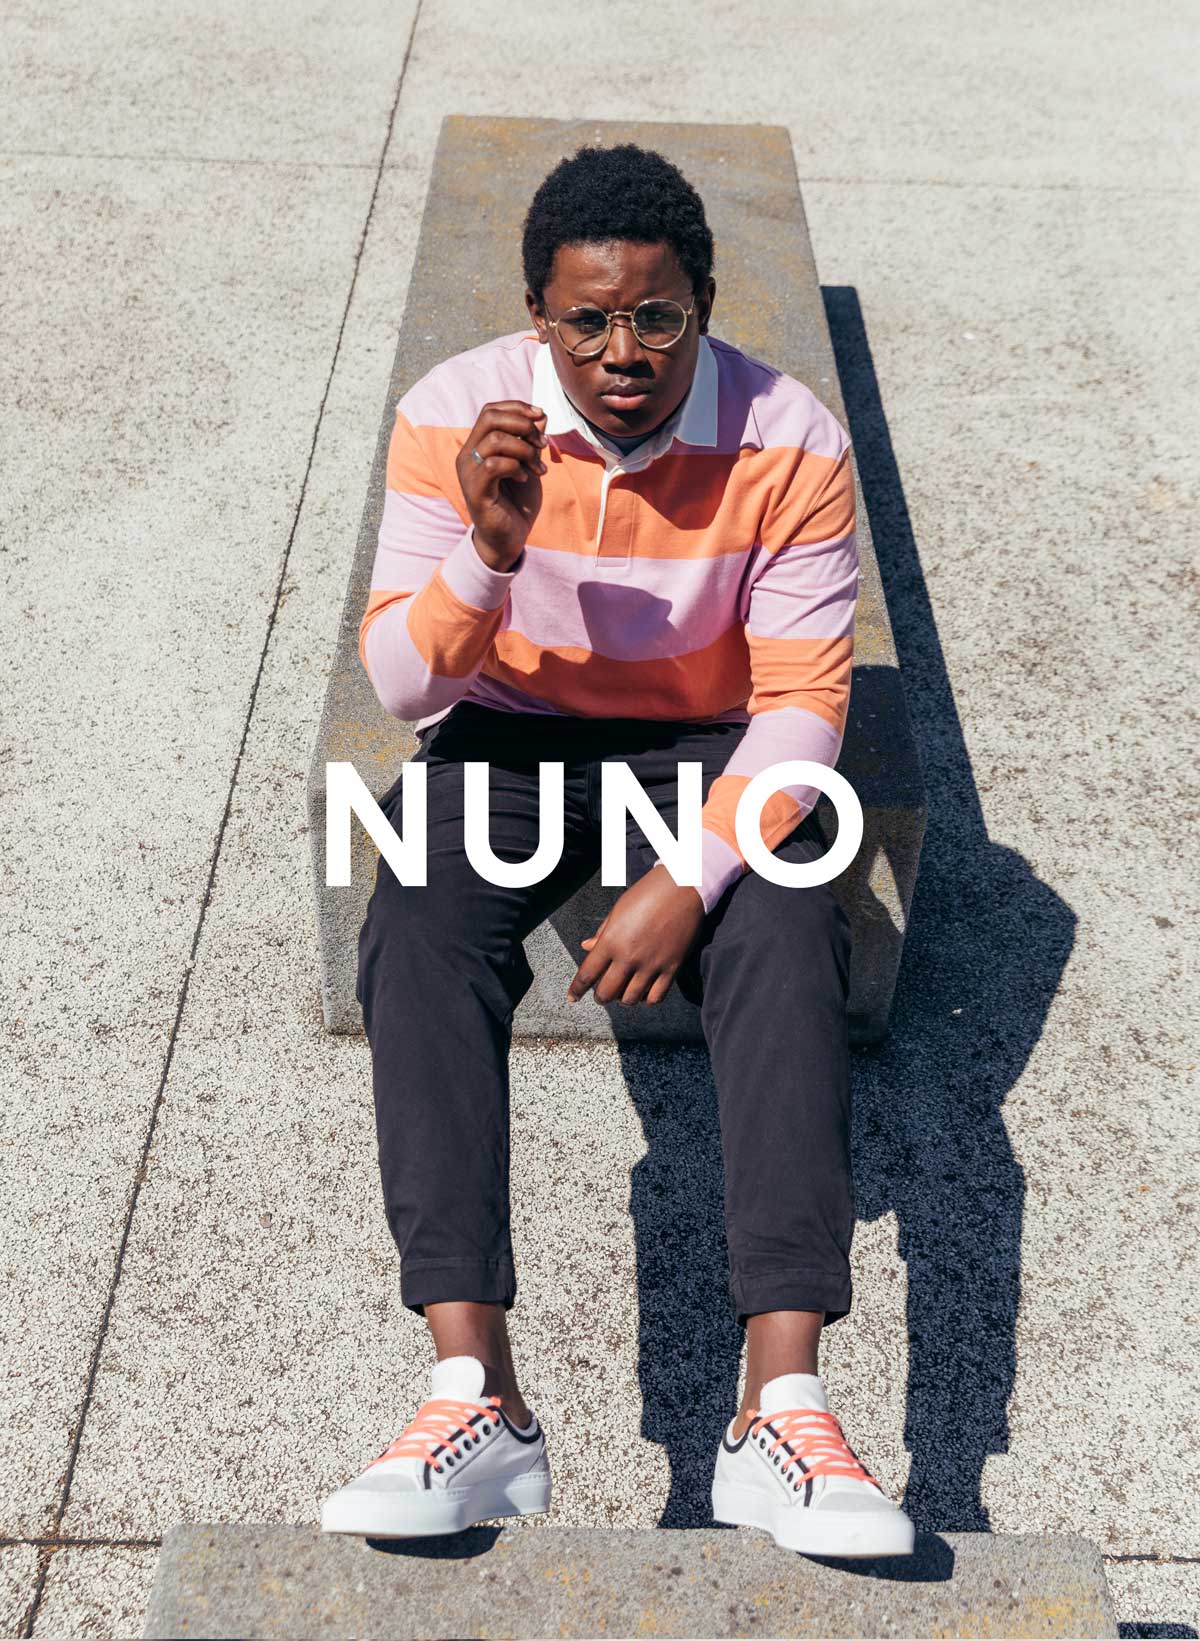 Nuno seduto su un muro, indossando sneakers Da Diverge, con un impatto sociale attraverso il progetto Imagine.